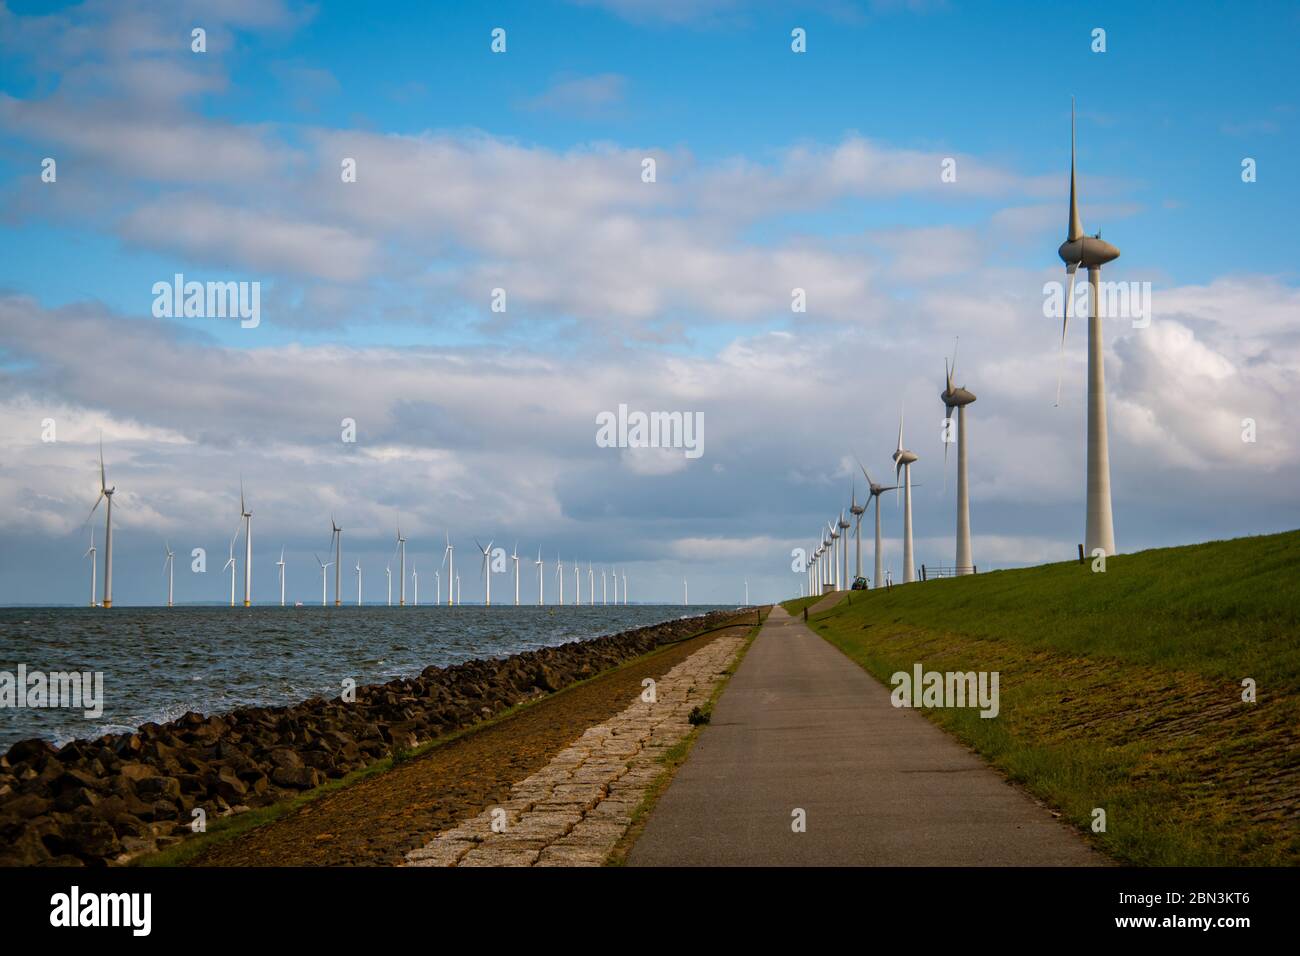 Chemin par la digue à l'immense parc de moulin à vent avec d'énormes éoliennes aux pays-Bas Noordoosstpolder, parc de moulin à vent d'énergie verte à Flevoland Banque D'Images